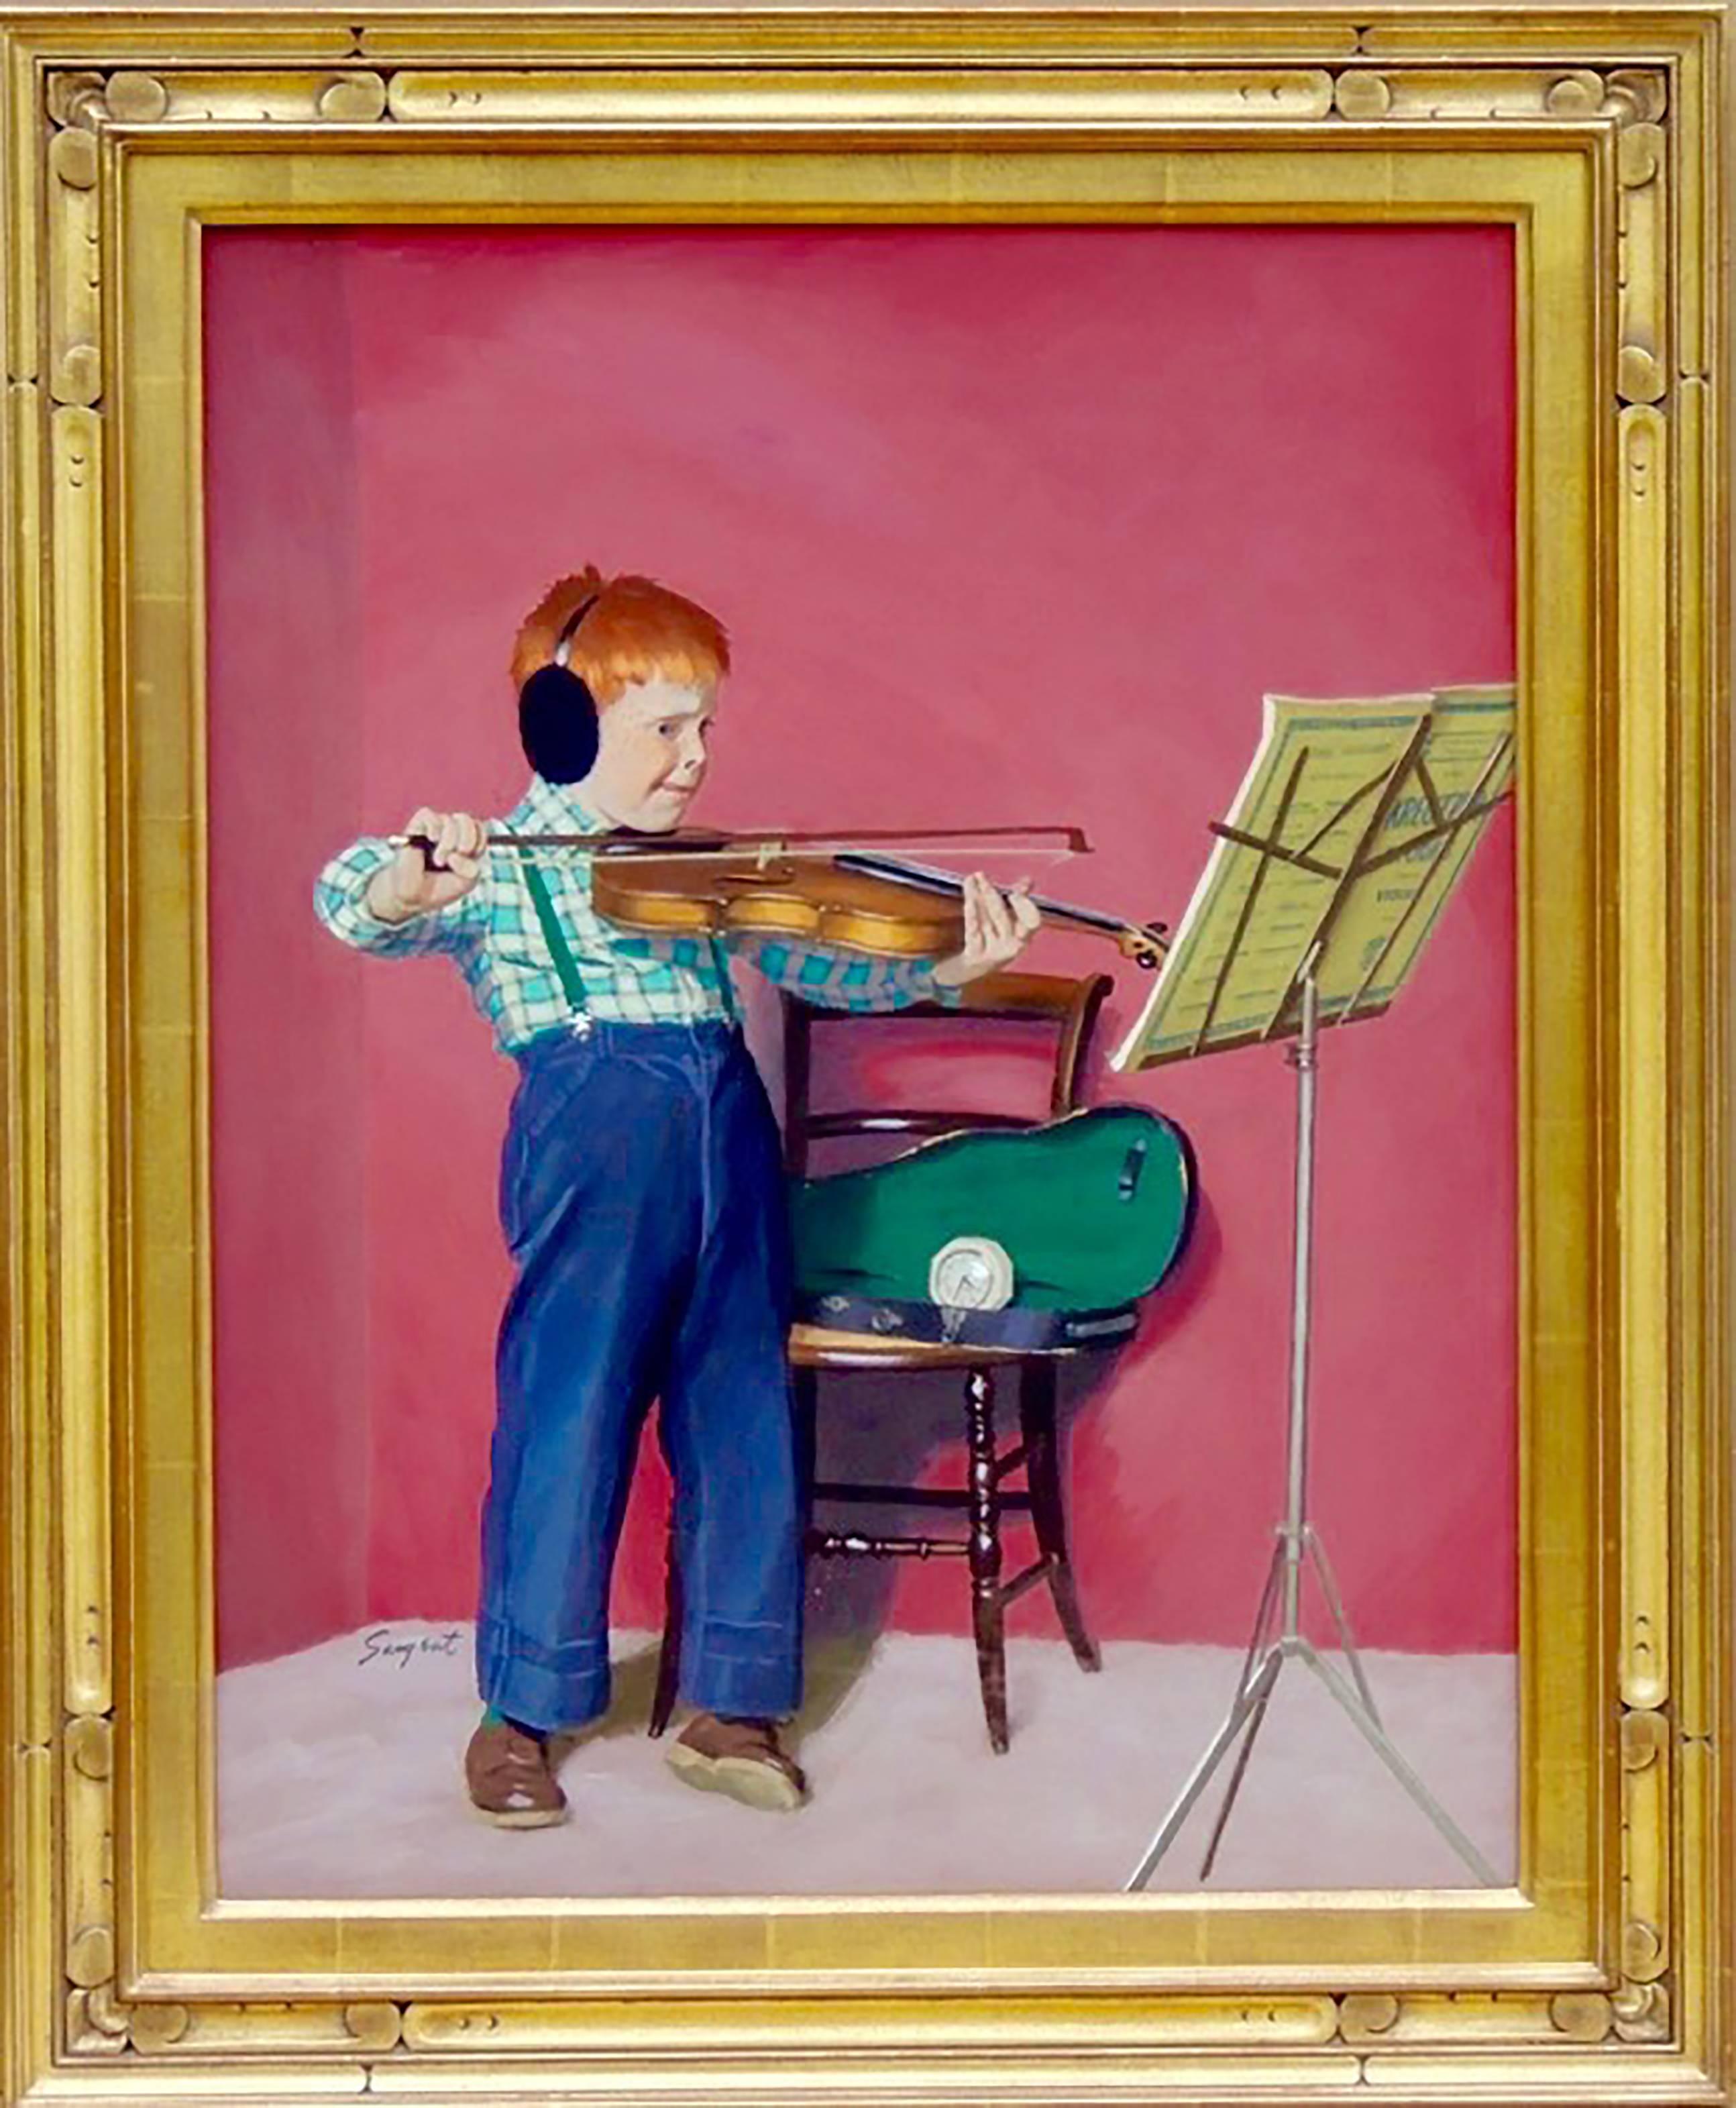 Pratique de violon, couverture de soirée du samedi - Painting de Richard Sargent